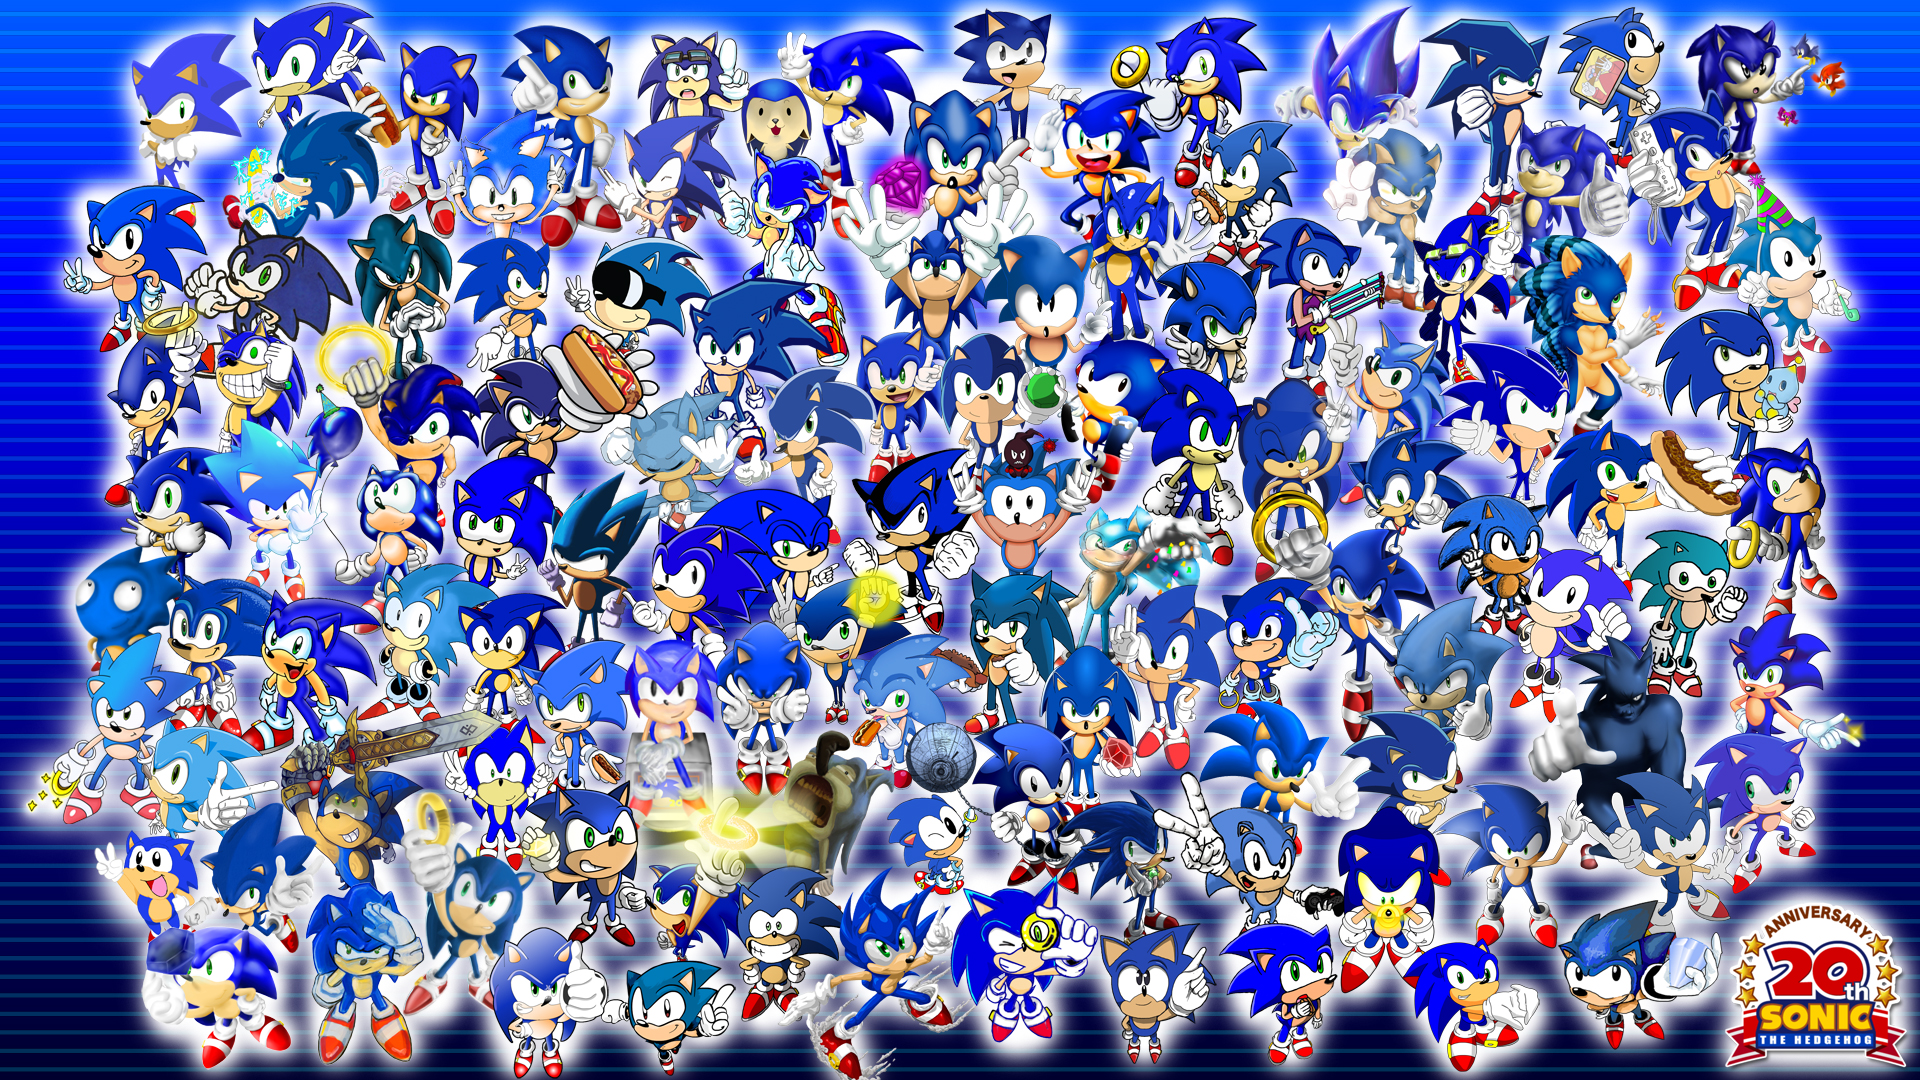 Imagenes de Sonic The Hedgehog en FULL HD